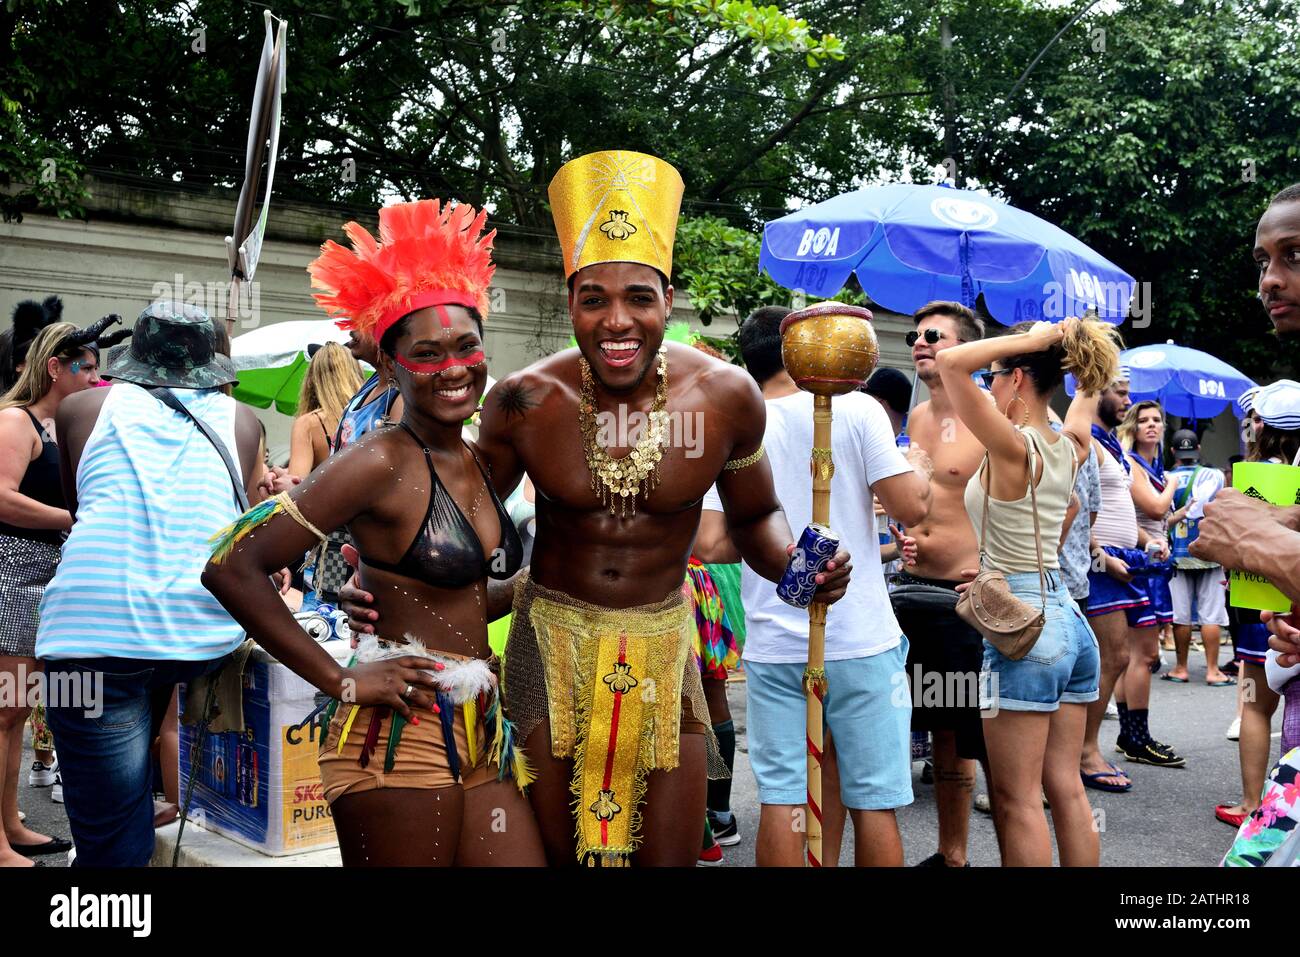 Carnevale di strada, Americhe, Brasile – 17 febbraio 2019: I festaioli entrano nello spirito del Carnevale durante una festa di strada che si tiene nella zona sud di Rio de Janeiro Foto Stock